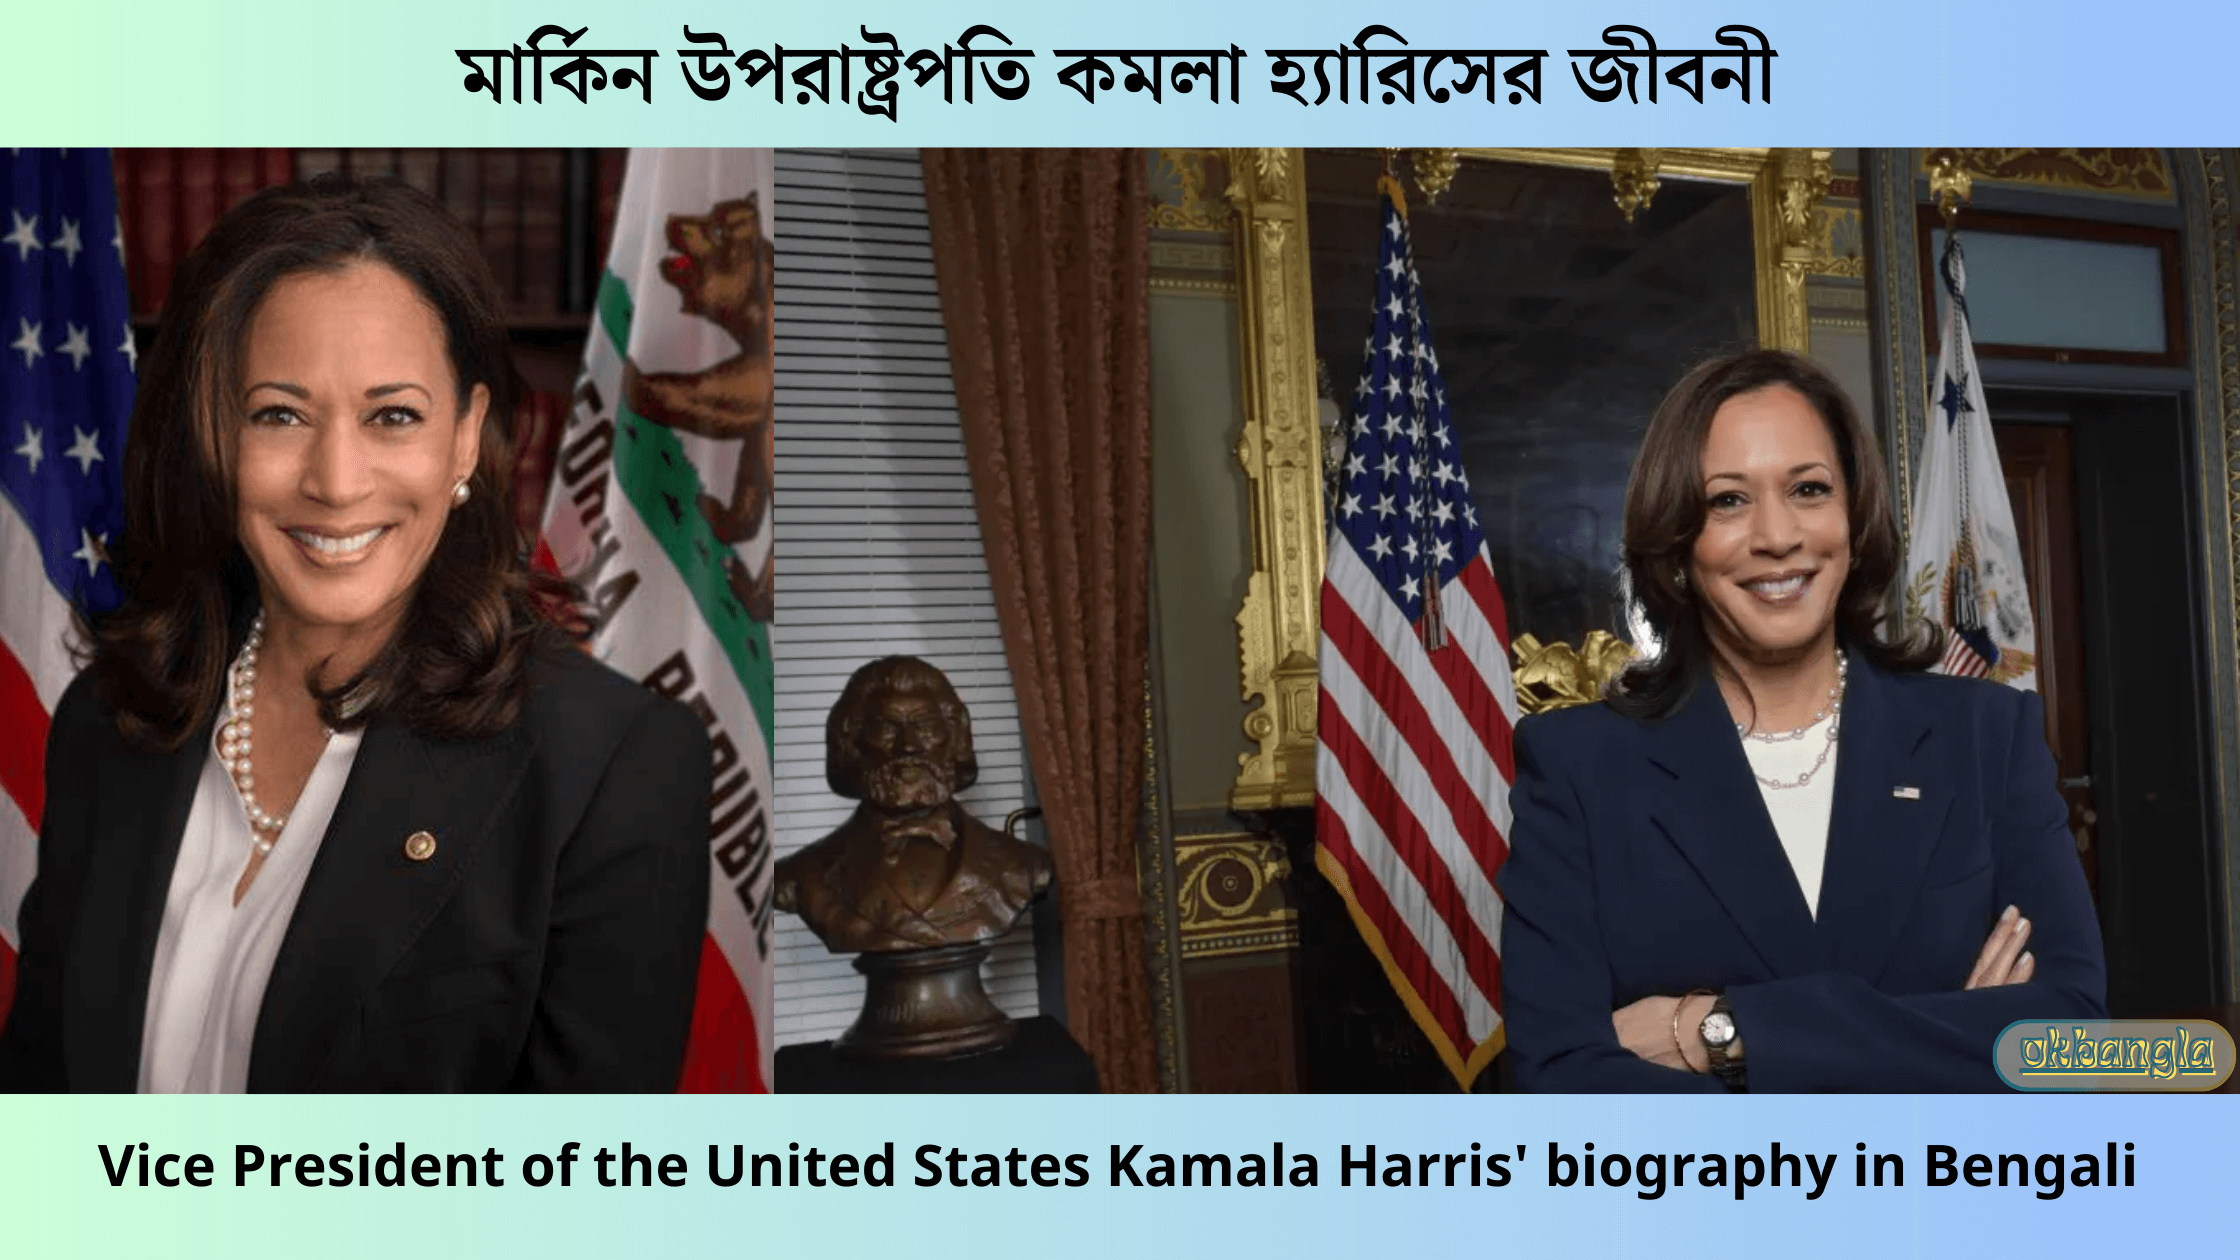 মার্কিন উপরাষ্ট্রপতি কমলা হ্যারিসের জীবনী, Vice President of the United States Kamala Harris' biography in Bengali